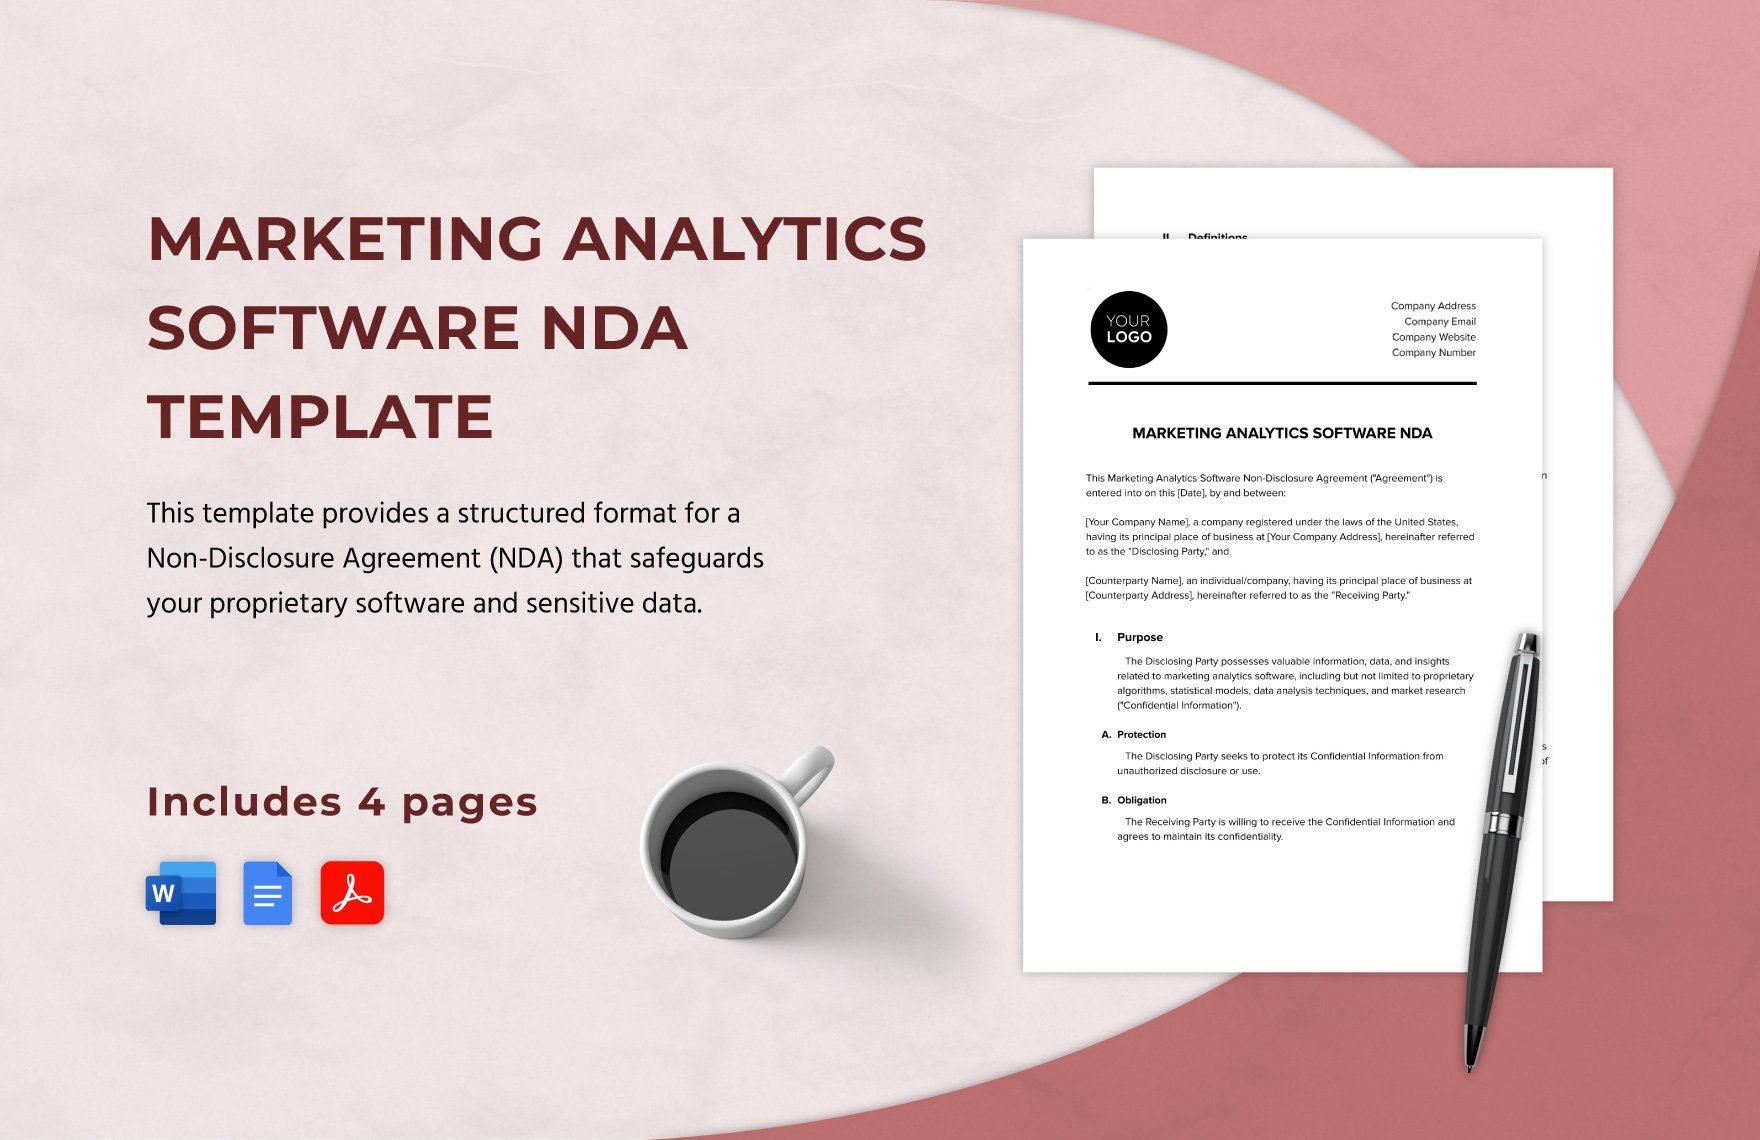 Marketing Analytics Software NDA Template